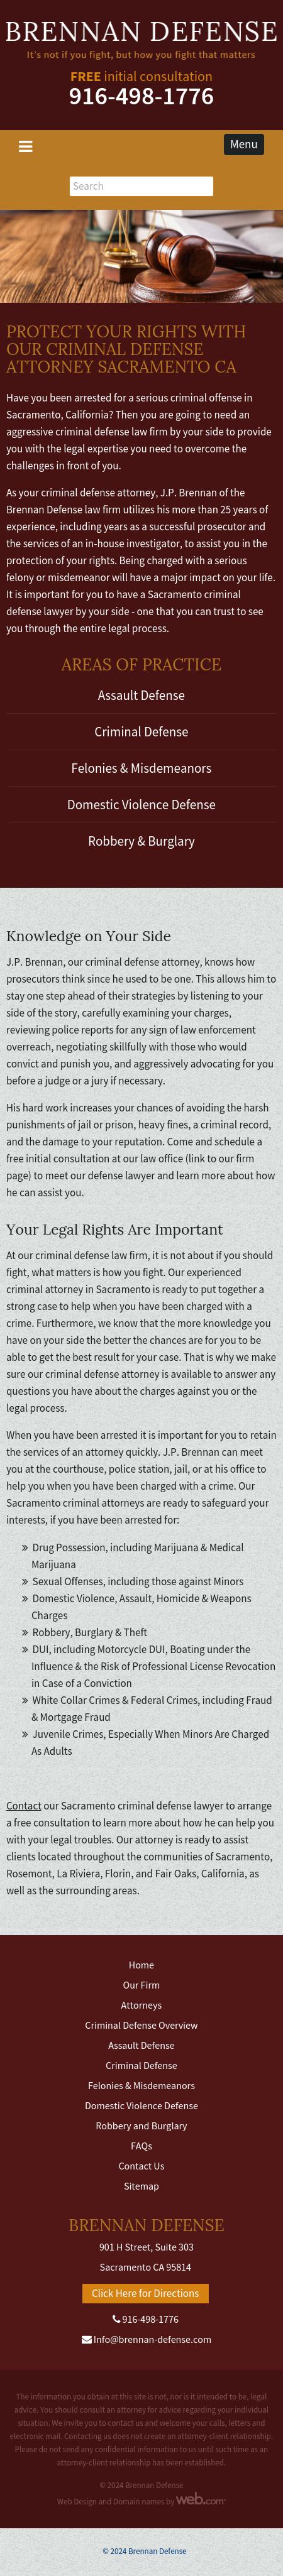 Brennan Defense - Sacramento CA Lawyers